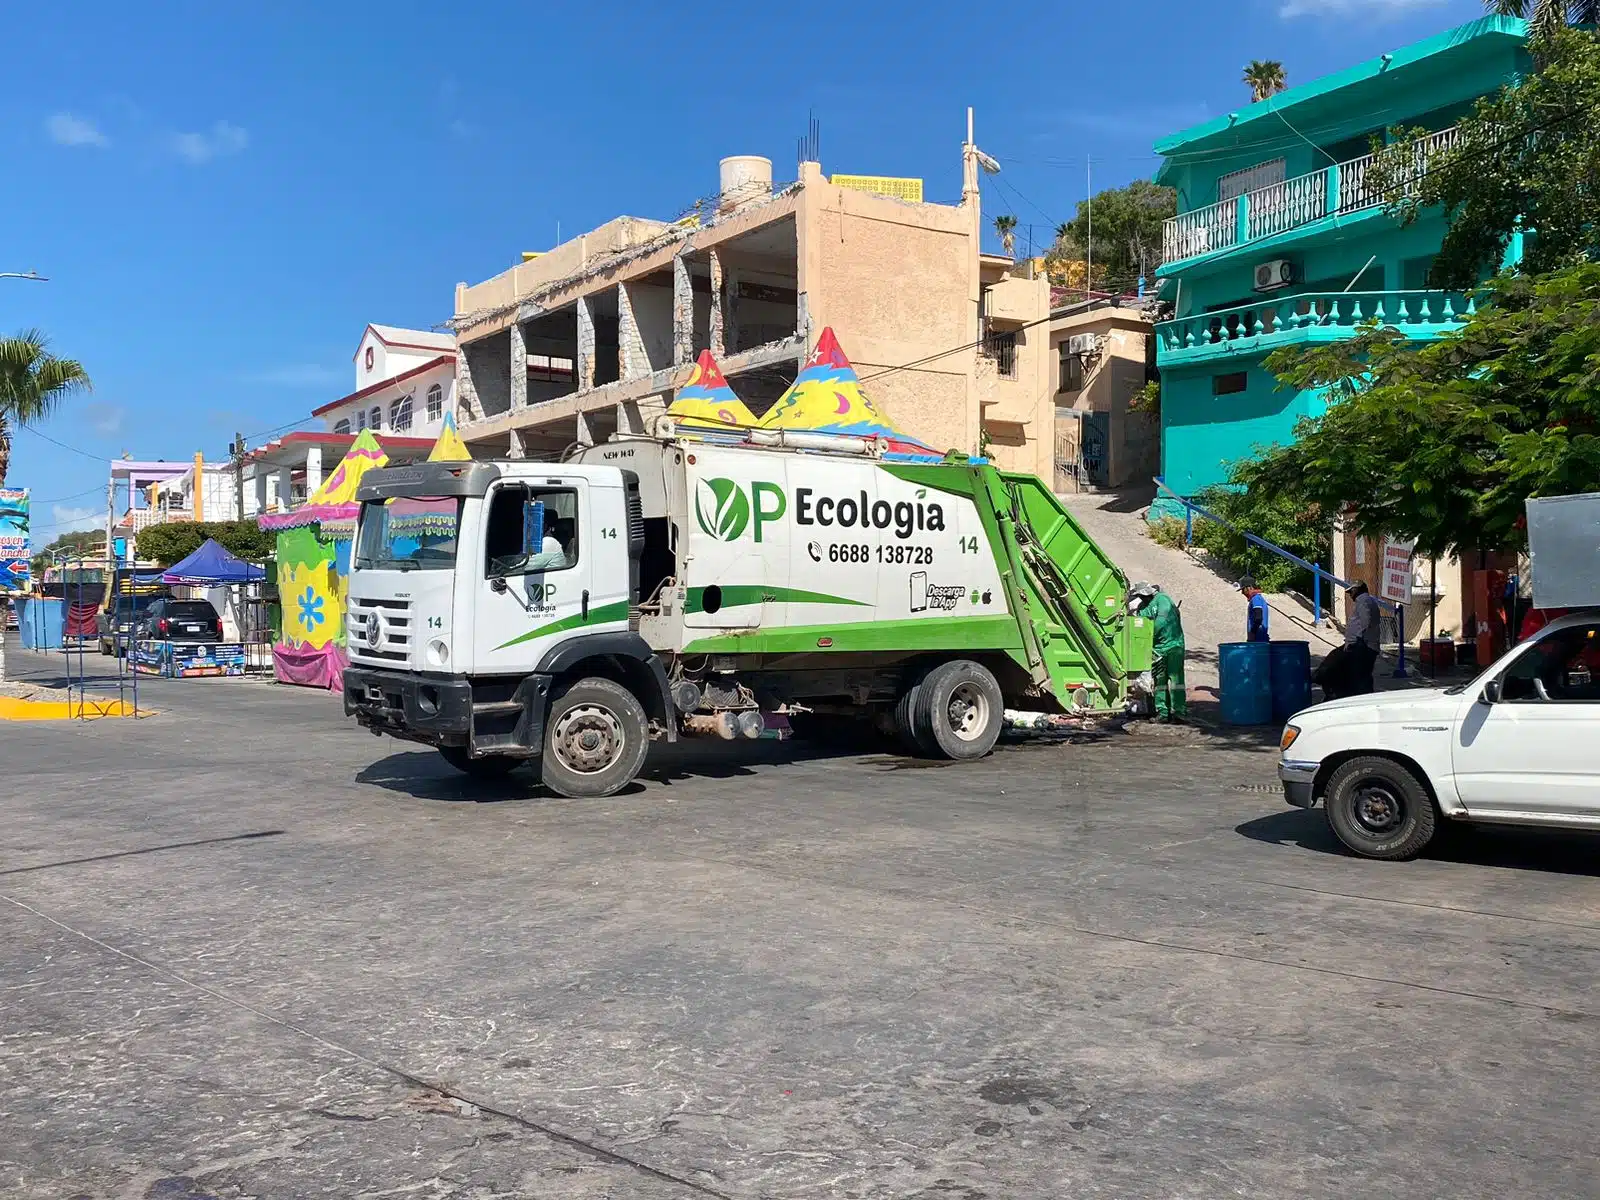 Camión recolector de basura de OP Ecología